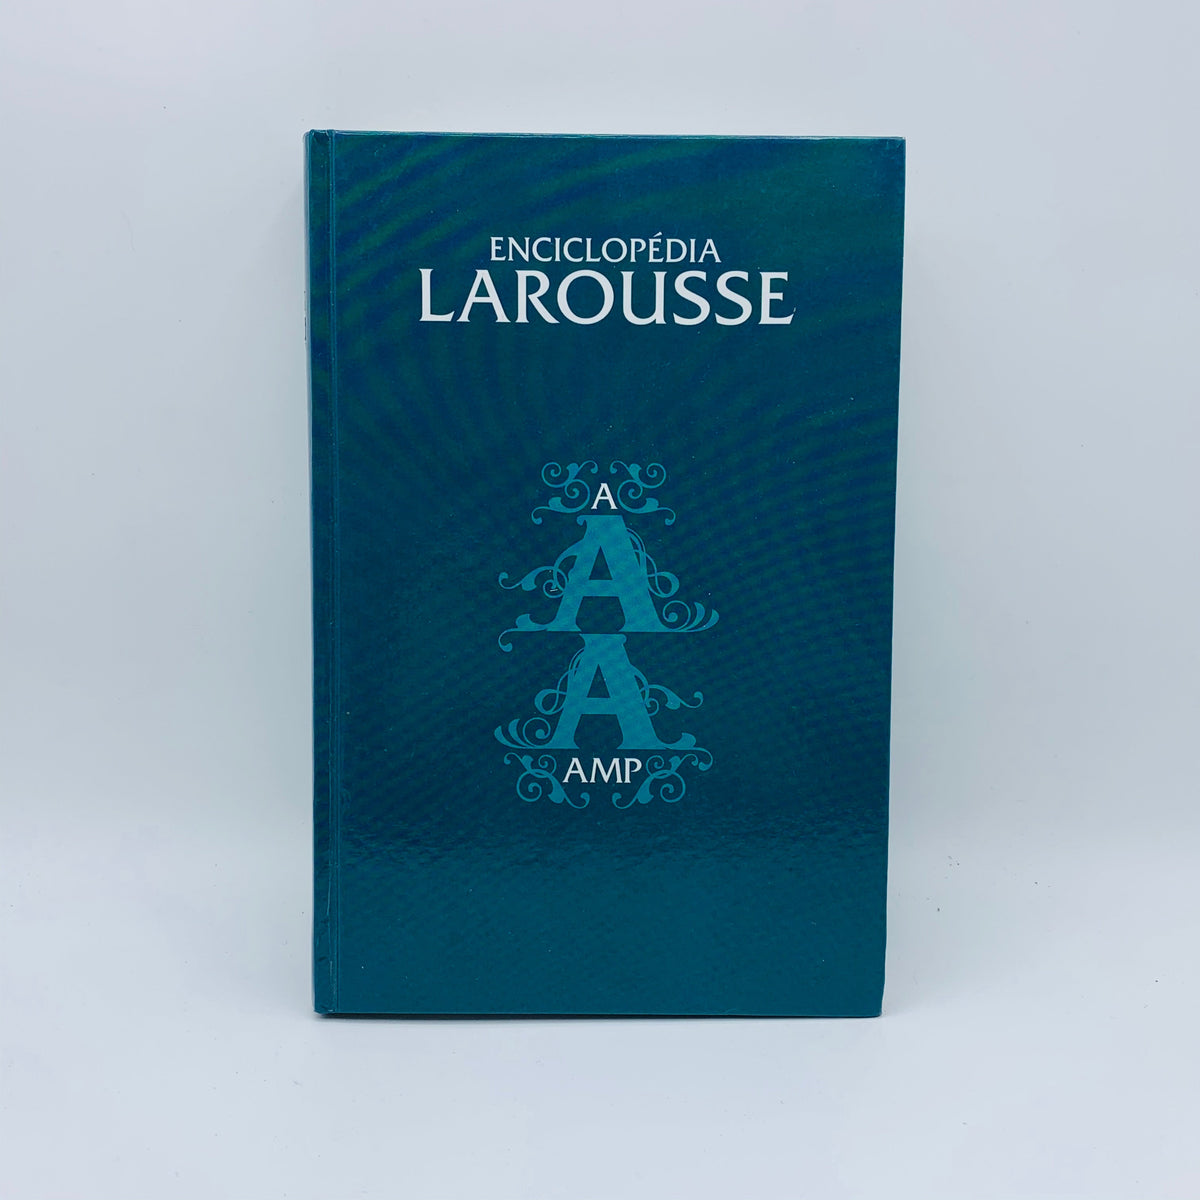 Enciclopédia Larousse - A: AMP - Stuff Out